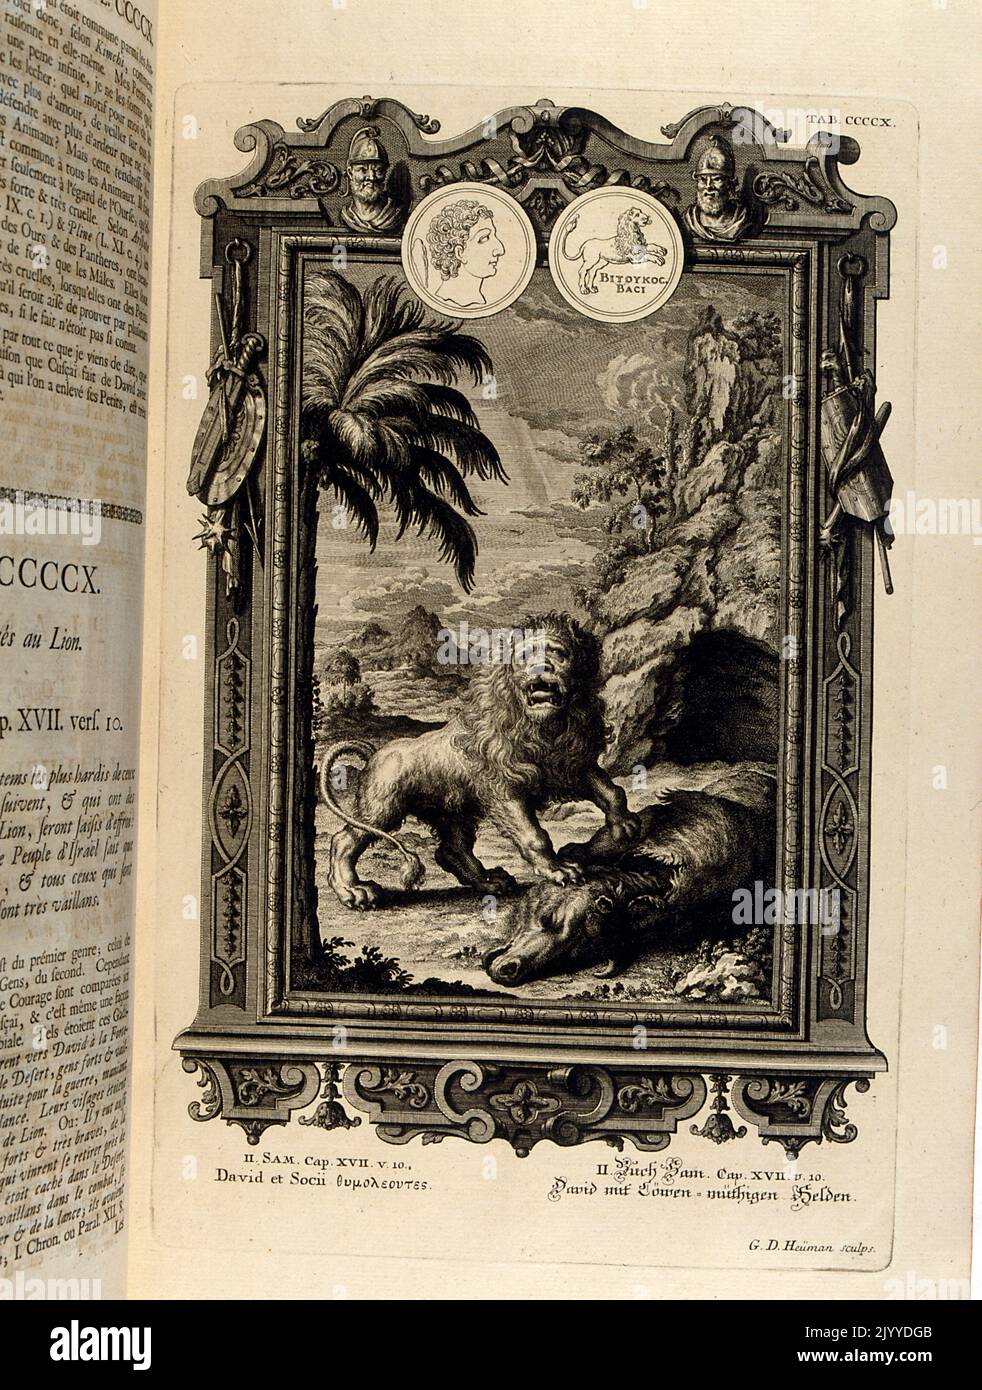 Gravur mit einem Löwen, der ein Wildschwein verschlingt. Die Illustration ist in einem kunstvollen Rahmen gesetzt. Stockfoto